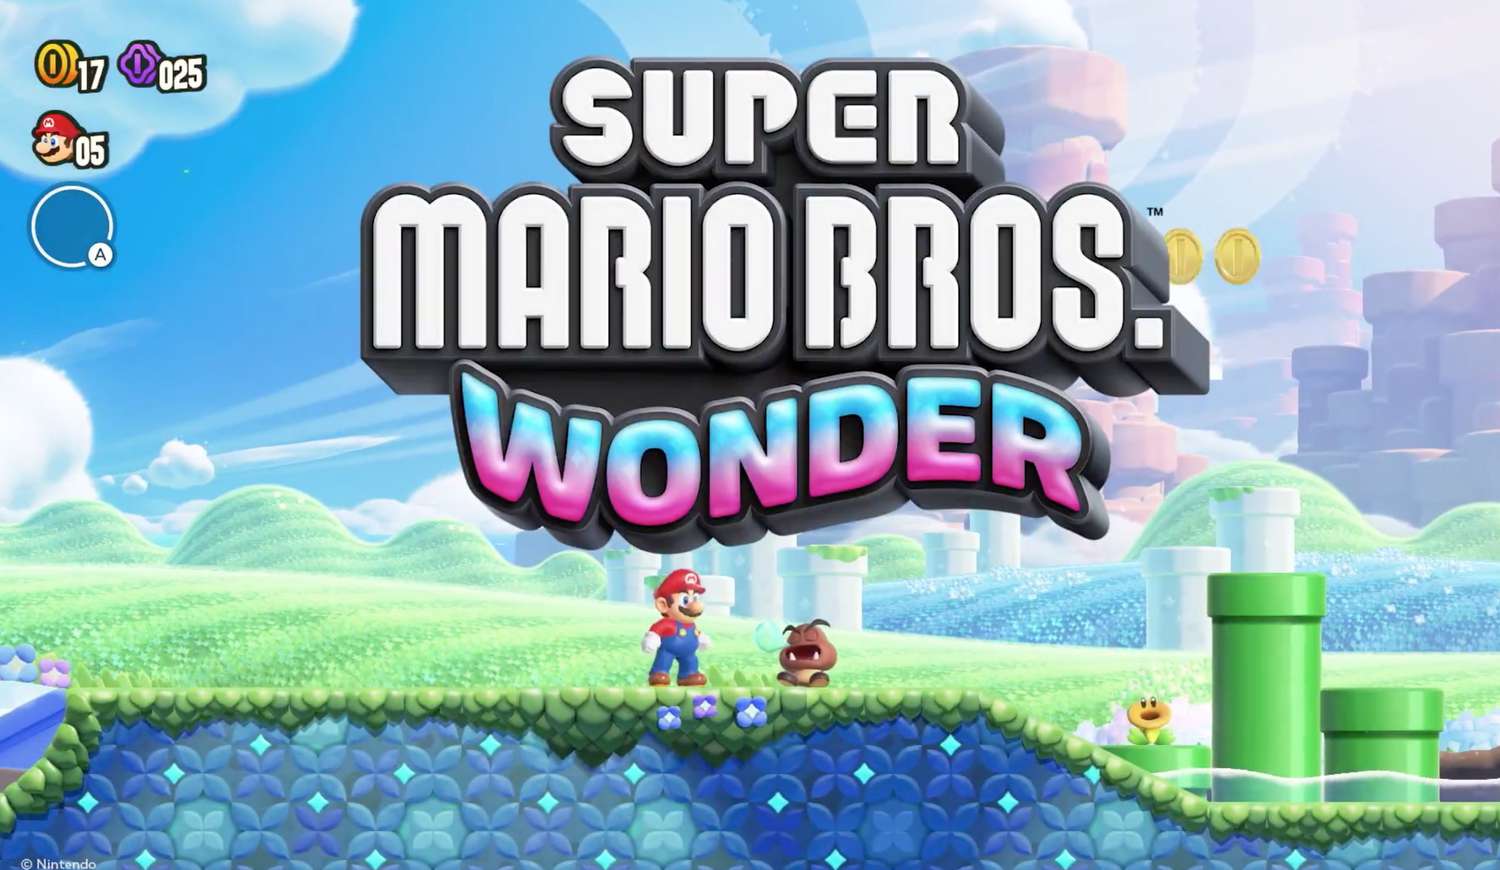 بازی دوبعدی Super Mario Bros. Wonder معرفی شد [تماشا کنید]